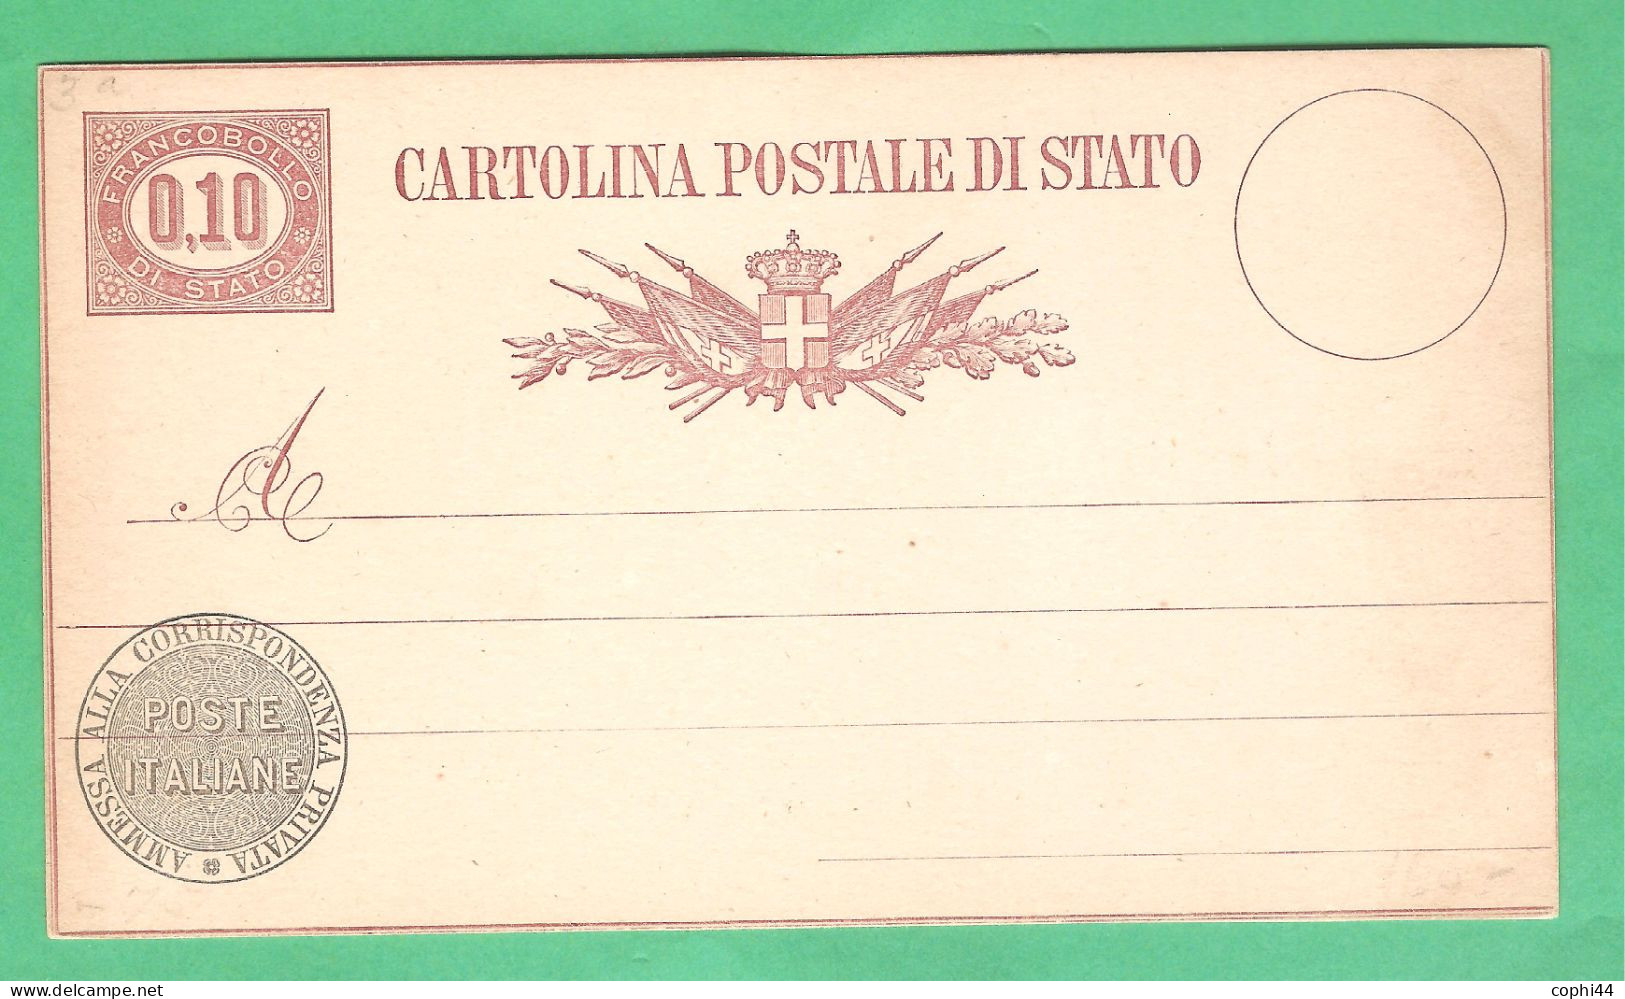 REGNO D'ITALIA 1877 VEII CARTOLINA POSTALE SERVIZIO DI STATO N. 3 Lire 0,10 NUOVA 2 FILETTI BUONE CONDIZIONI - Ganzsachen